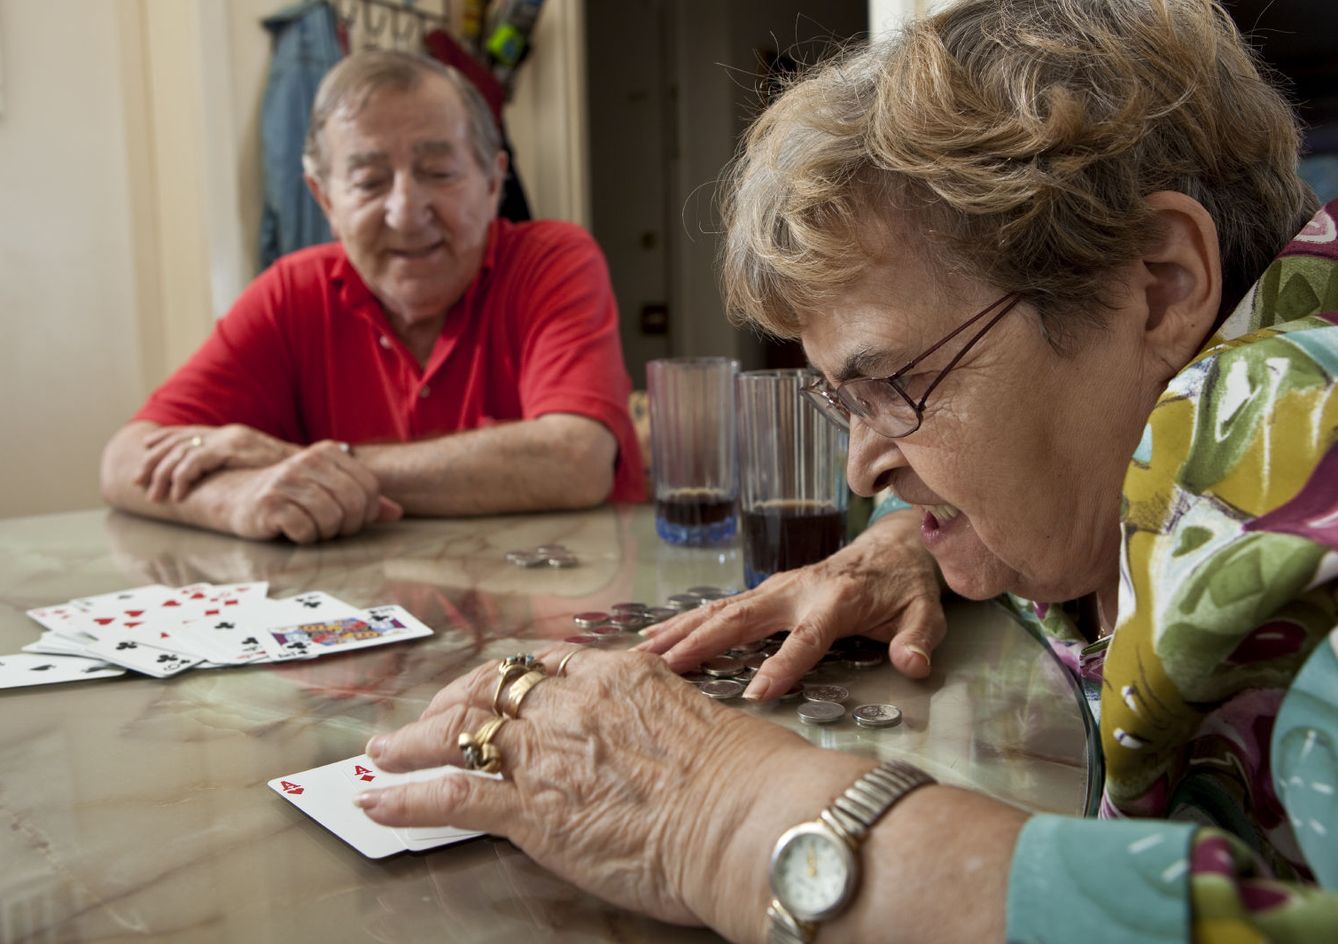 Los ancianos son más vulnerables a la adicción al juego. (iStock)